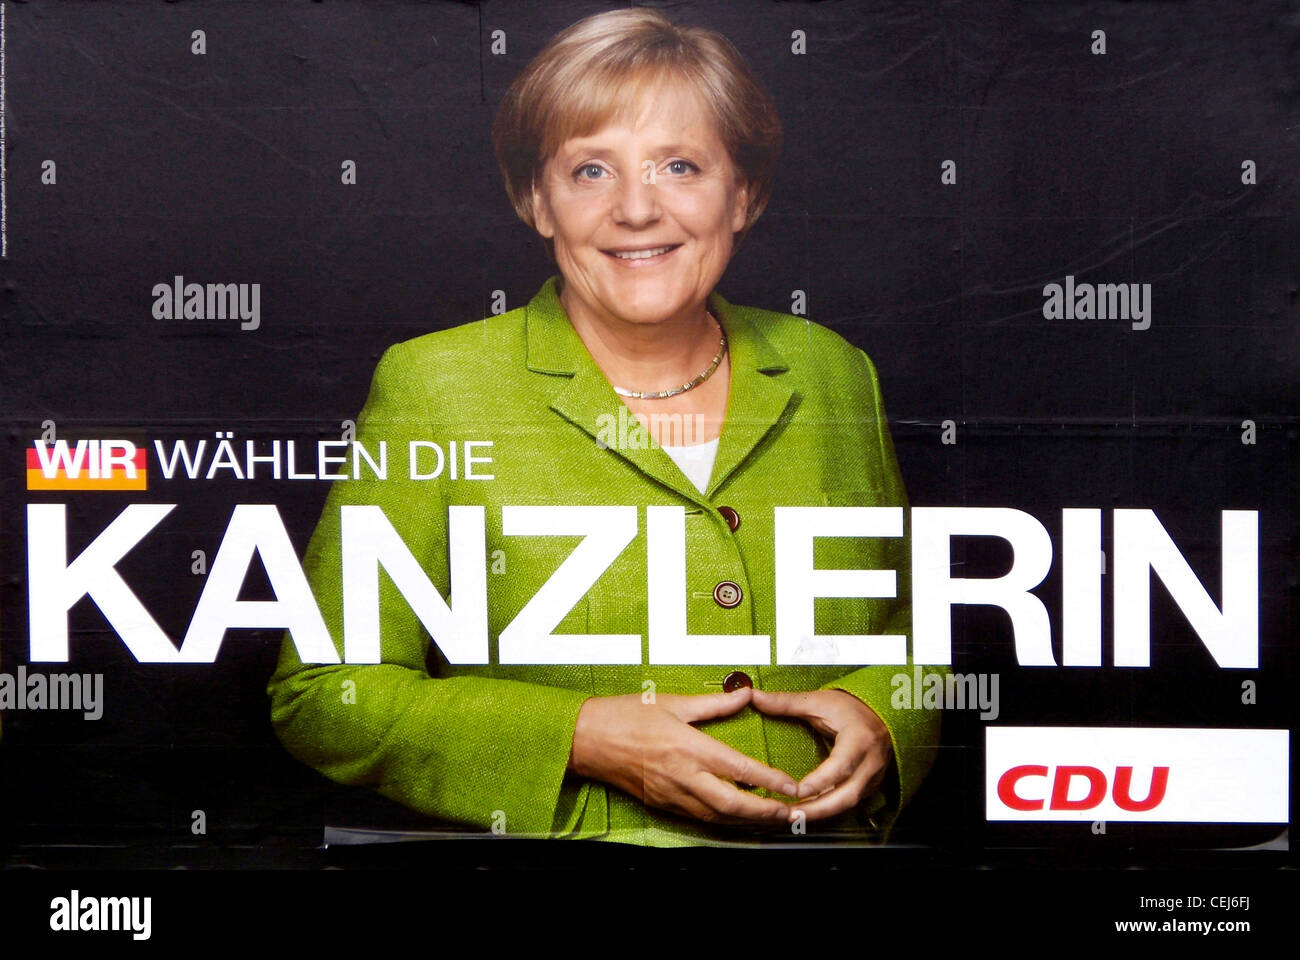 Affiche électorale du parti allemand CDU pour Angela Merkel au Bundestag élections de 2009. Banque D'Images